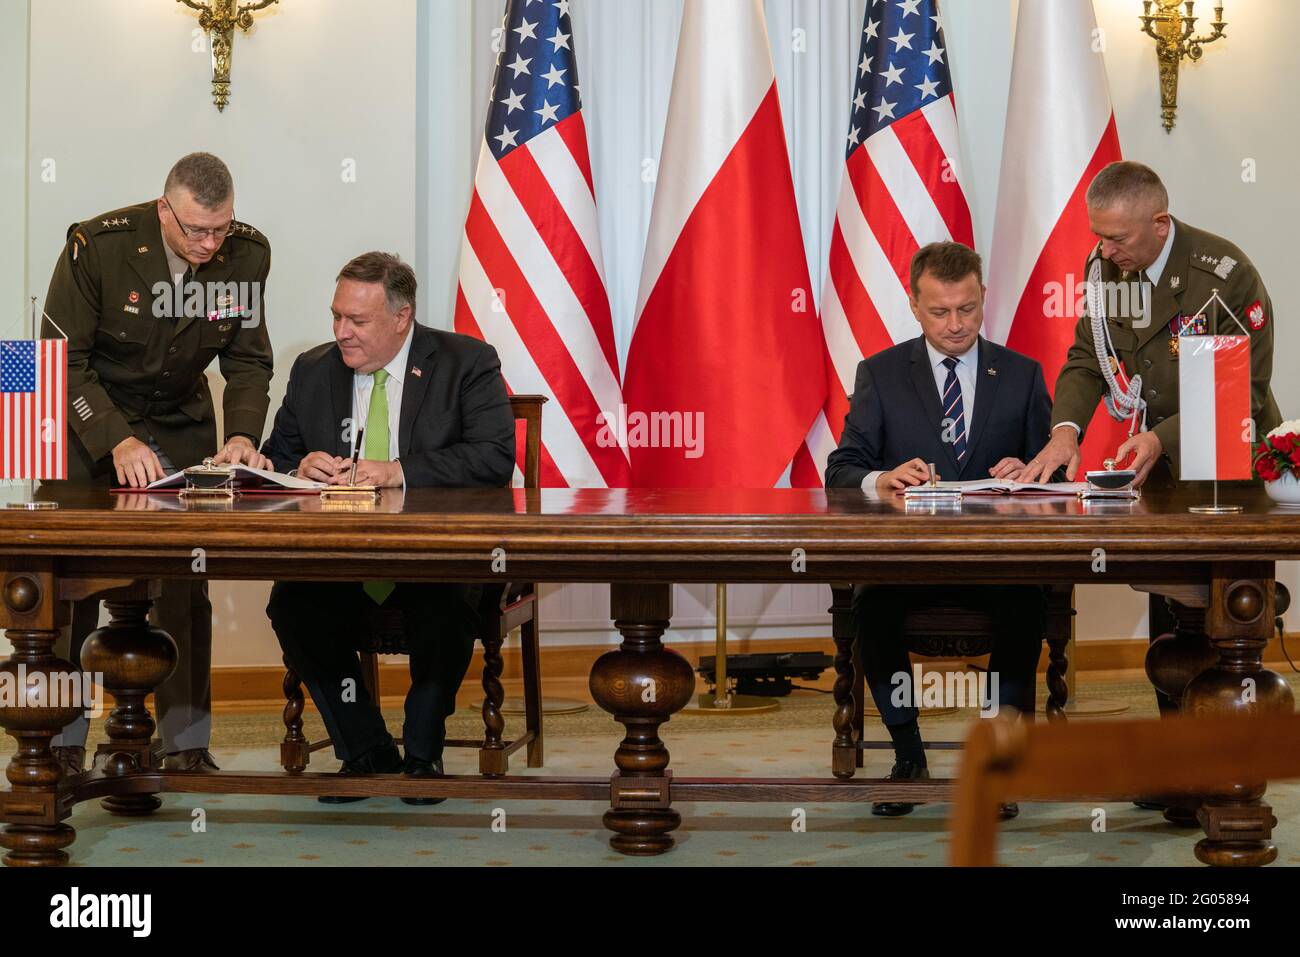 Il Segretario di Stato Michael R. Pompeo partecipa alla cerimonia di firma dell'accordo di cooperazione rafforzata tra Stati Uniti e Polonia con il presidente polacco Andrzej Duda e il ministro polacco della Difesa Mariusz Błaszczak, a Varsavia, Polonia, il 15 agosto 2020 Foto Stock